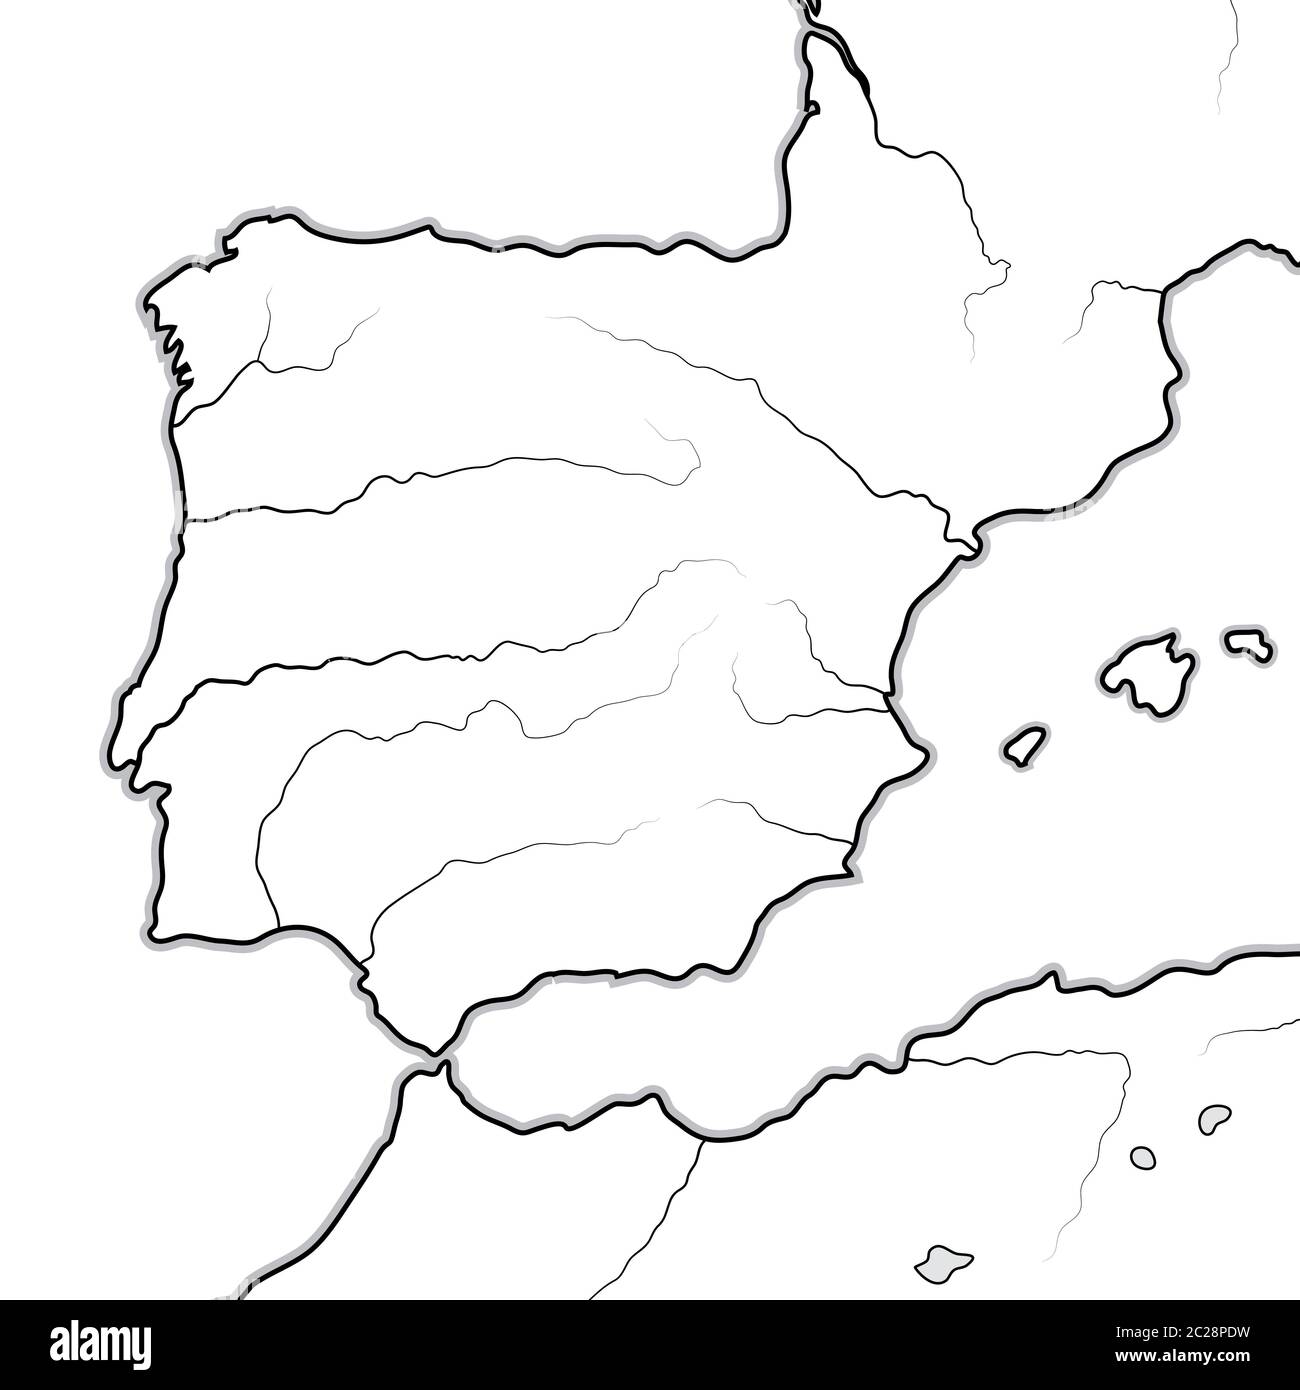 Mappa DELLE terre SPAGNOLE: Spagna, Portogallo, Catalogna, Iberia, i Pirenei. Grafico geografico. Foto Stock